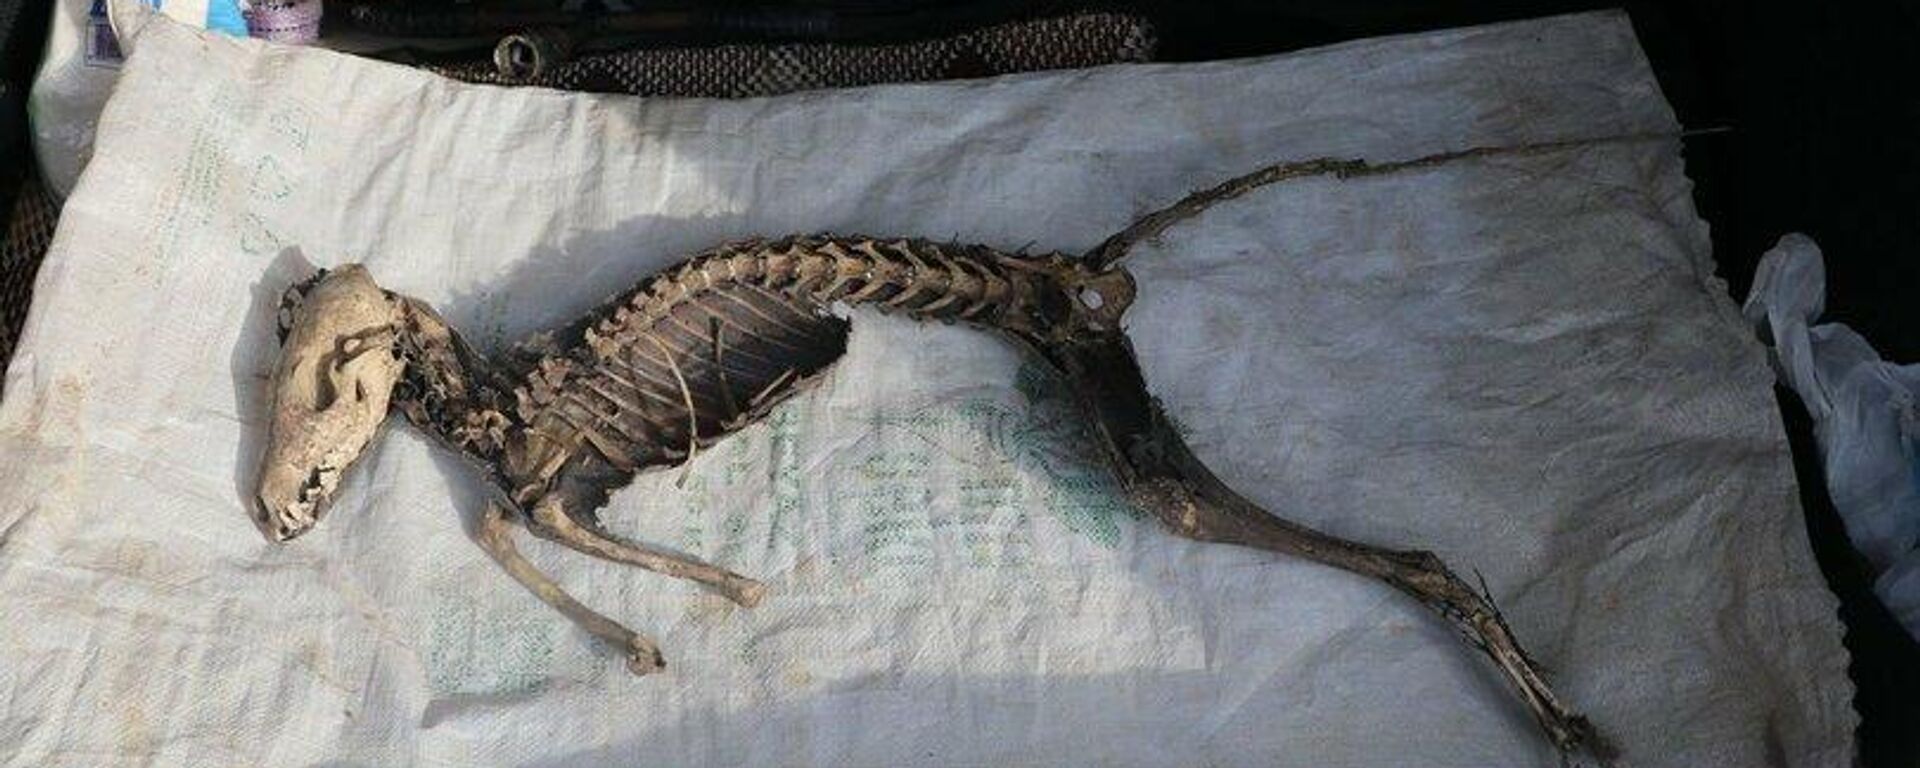 Iğdır Üniversitesi, kazıda bulunan hayvan iskeletinin türünü araştıracak - Sputnik Türkiye, 1920, 10.11.2021